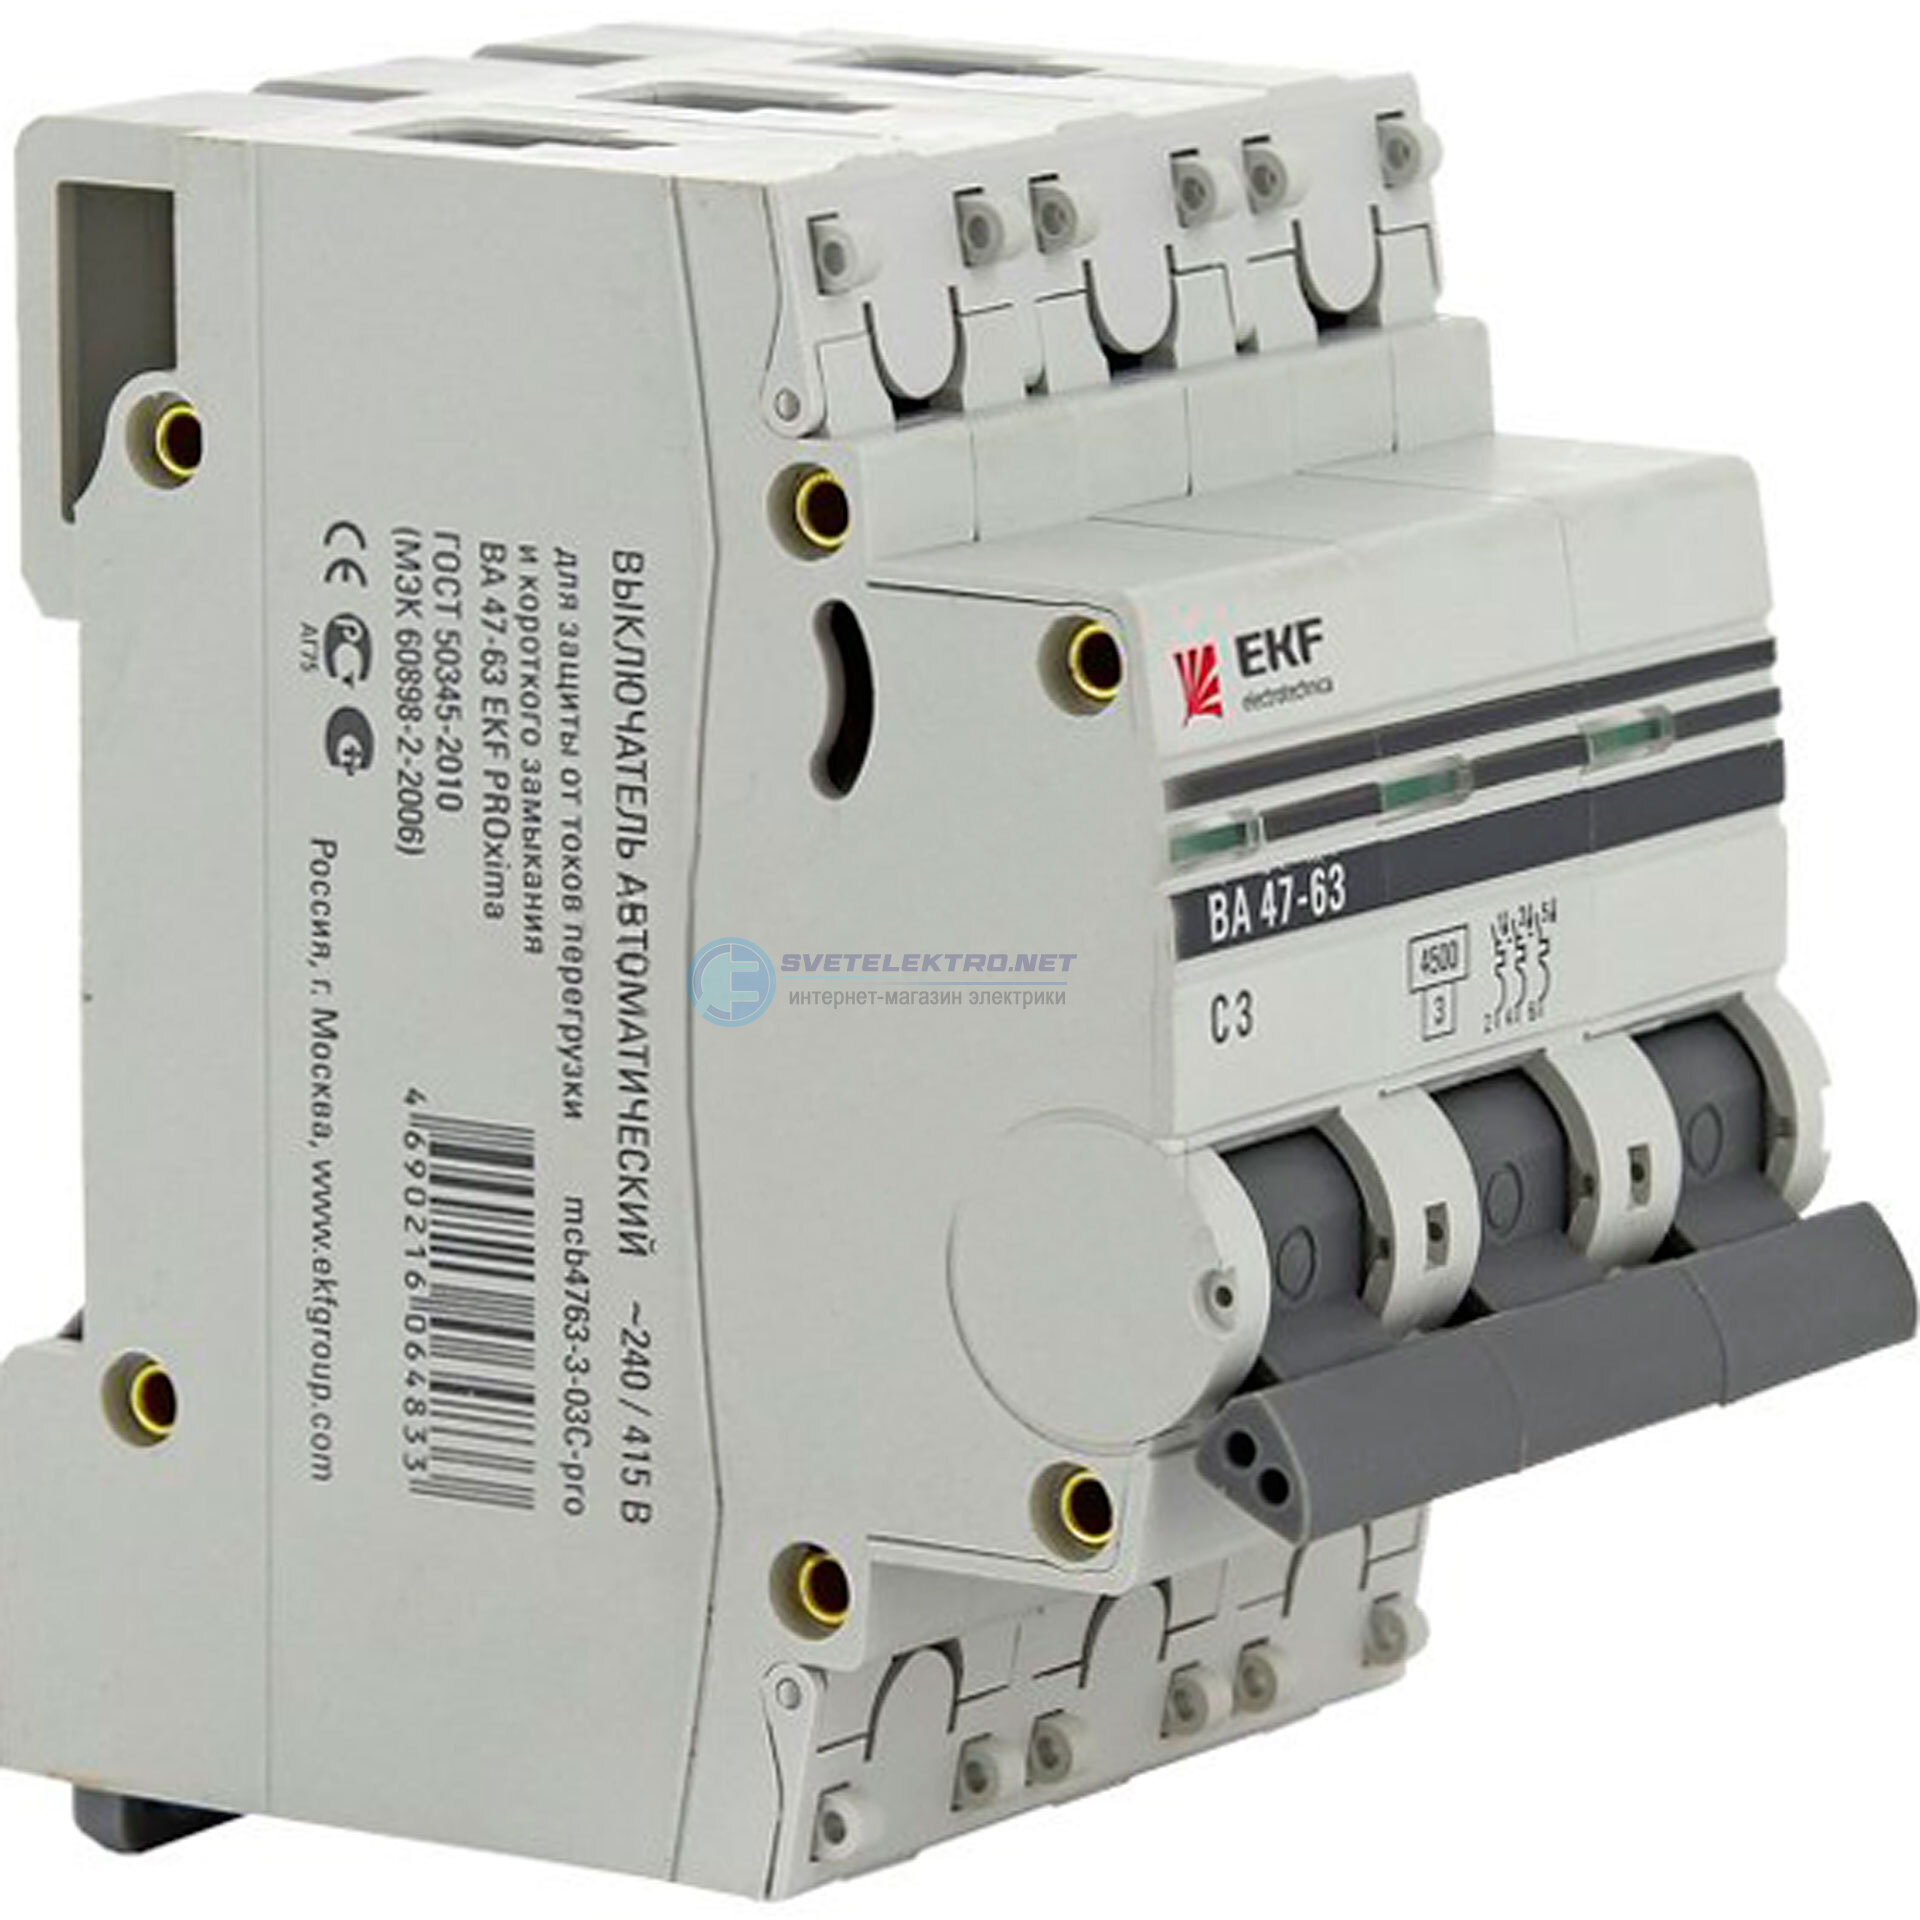 Автоматический выключатель 16а ва 47 63. Автоматический выключатель EKF ва 47-63. Автоматический выключатель EKF proxima ва47-63. Автоматический выключатель EKF c40. EKF c25 автомат 47-63.